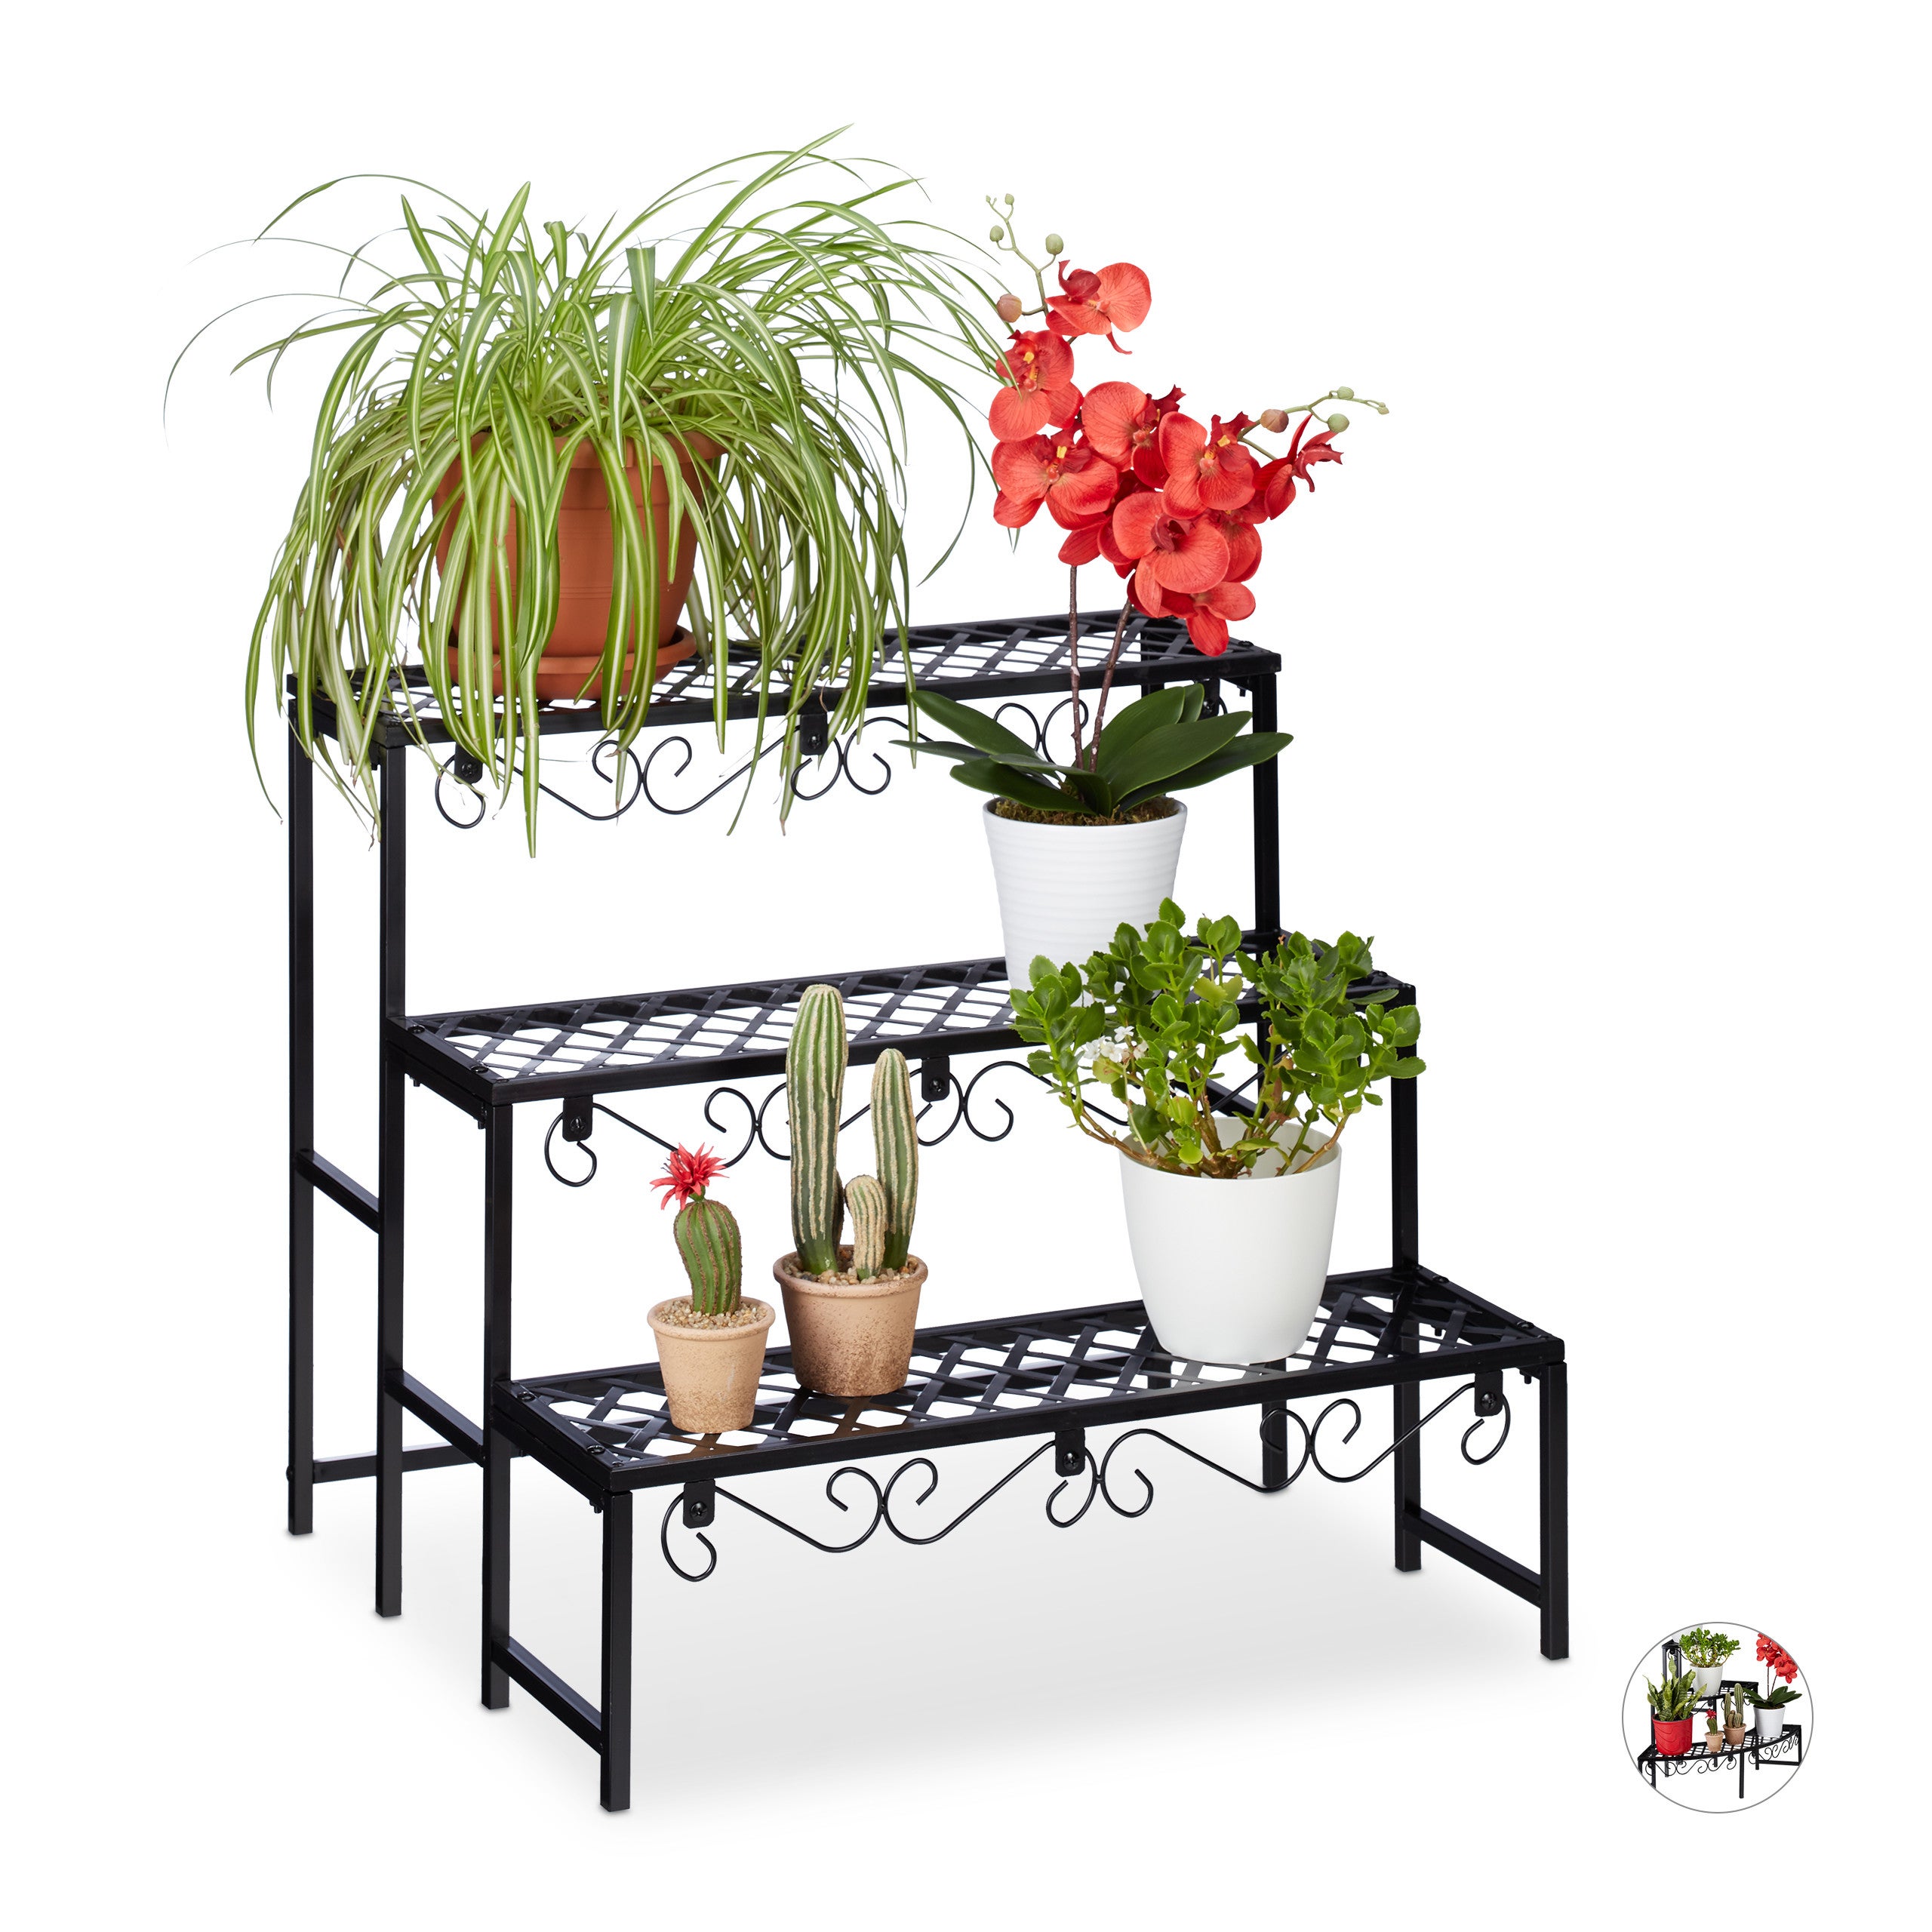 Relaxdays Étagère Fleurs métal 6 Niveaux Support Pot de Fleurs Noir Escalier pour Plantes décoration H: 140 cm 